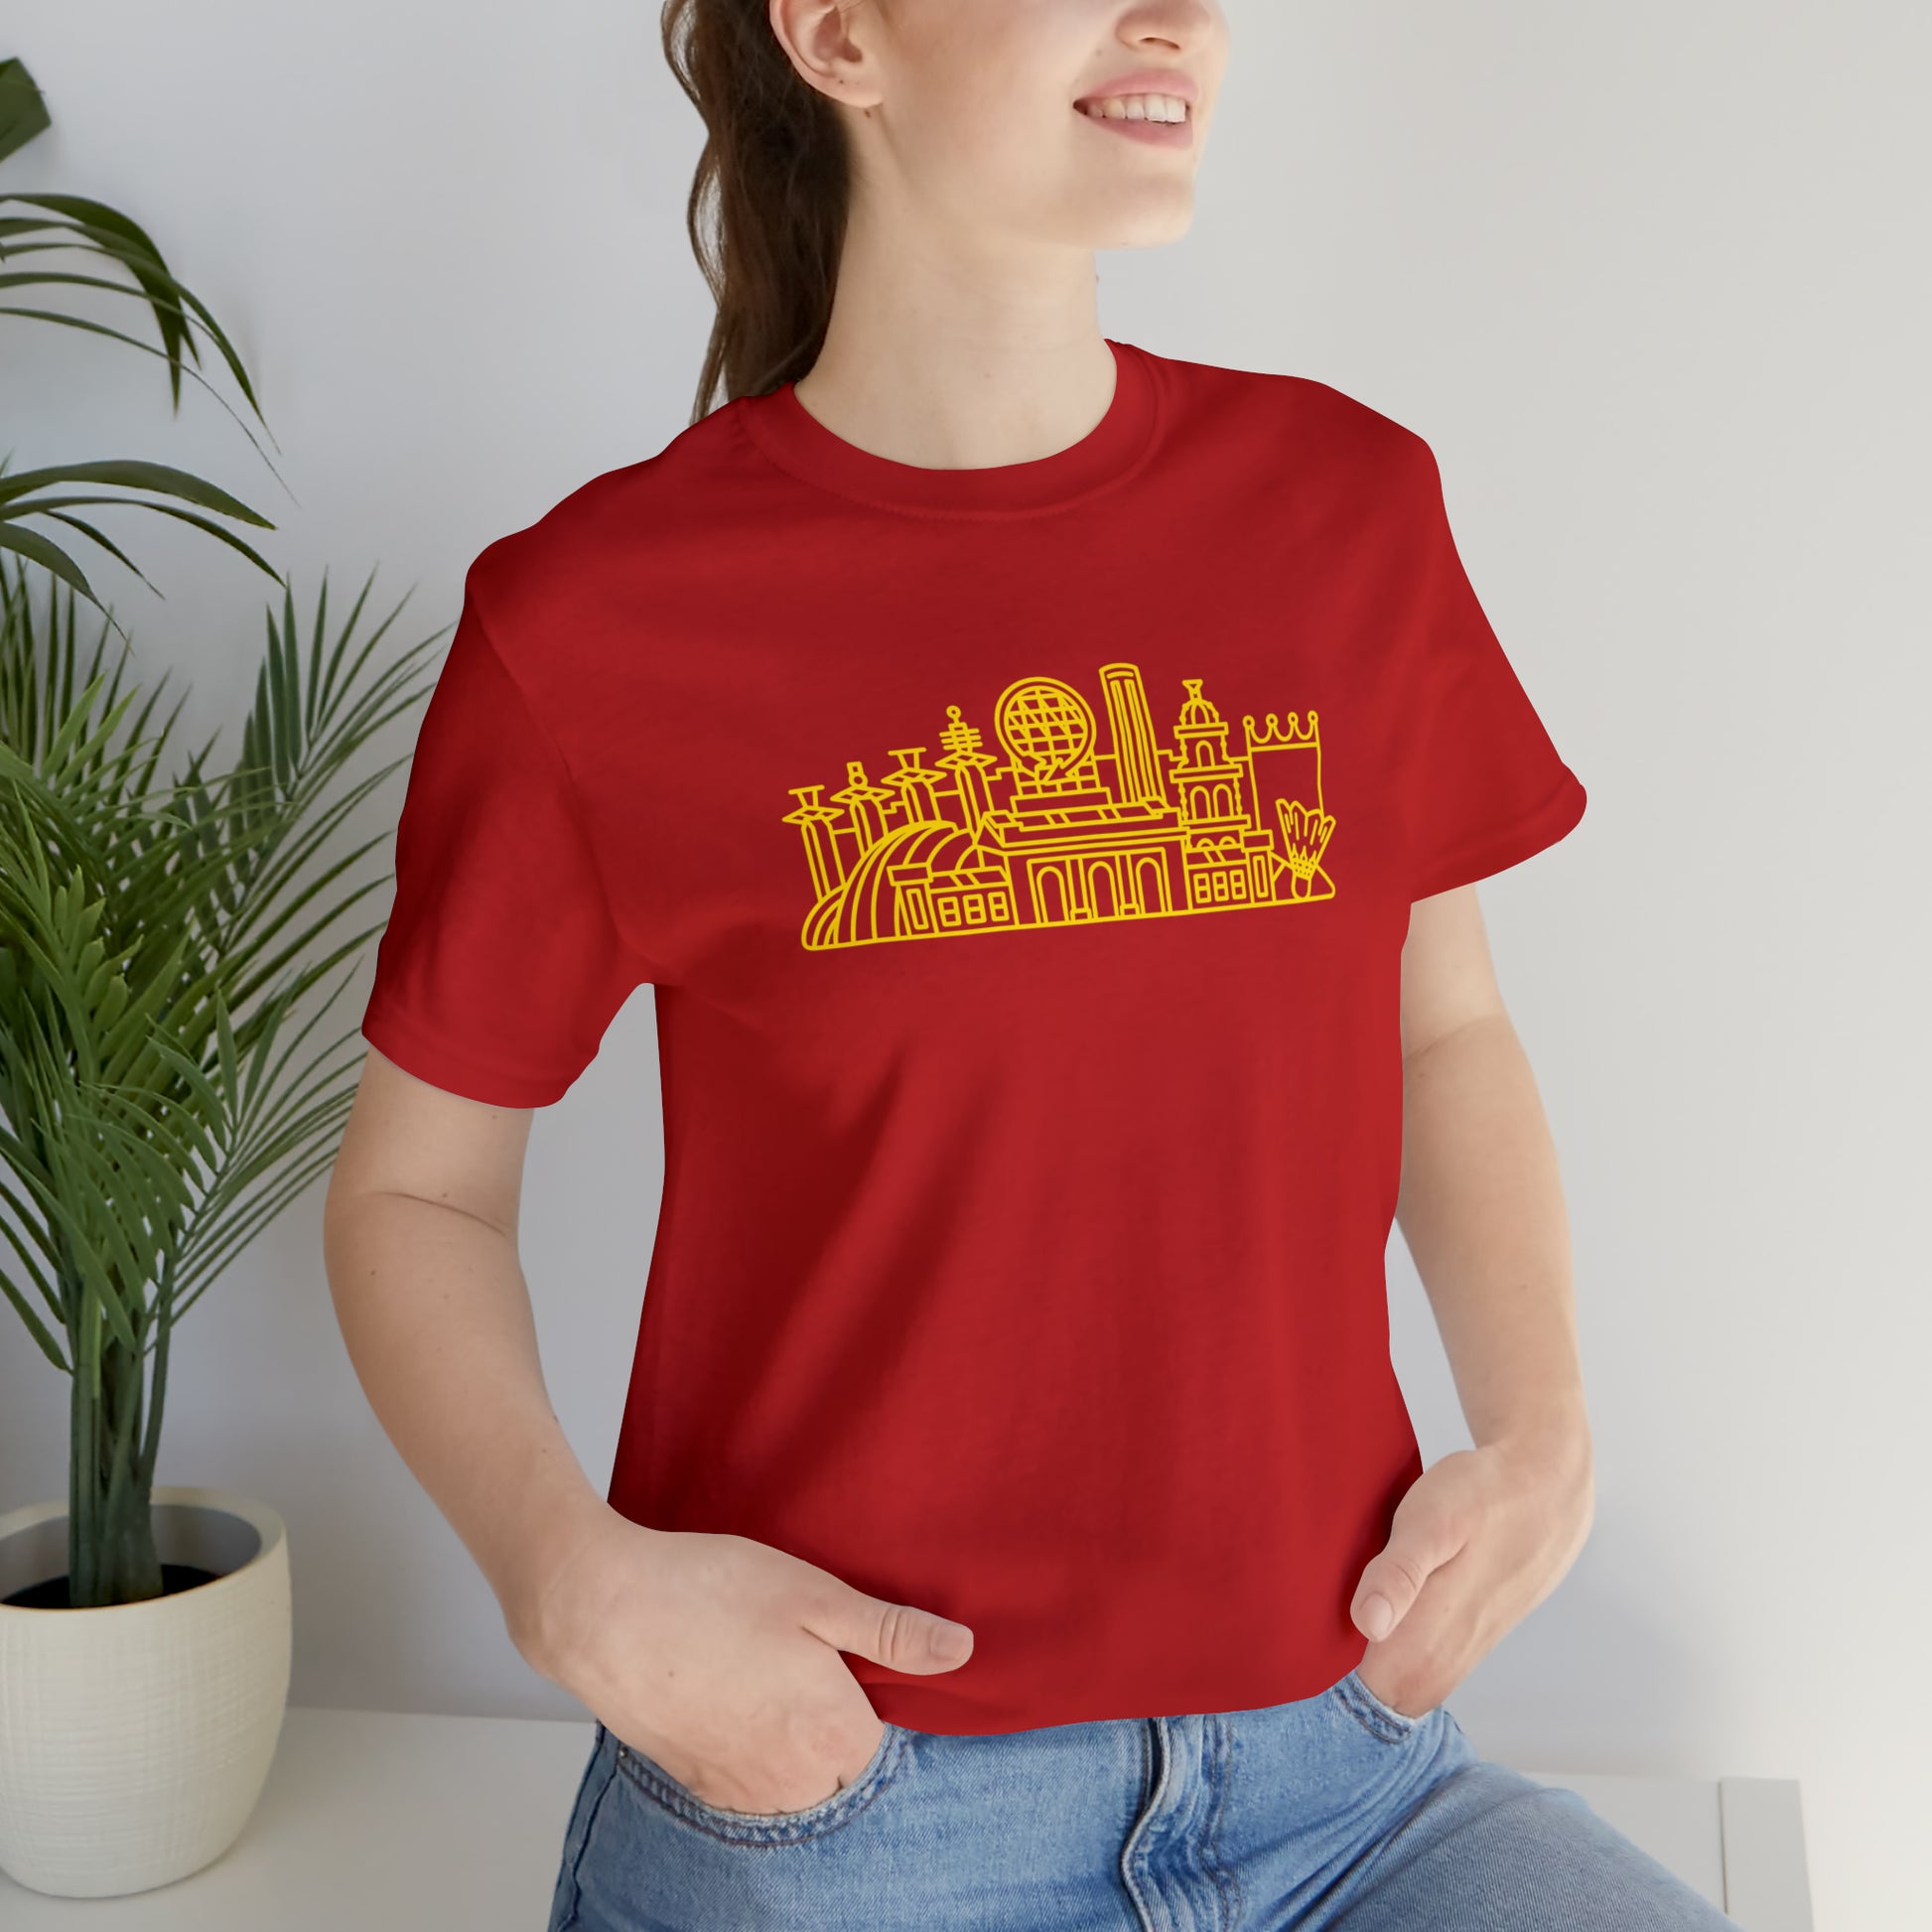 Vintage Kansas City Kansas KS T-Shirt ...